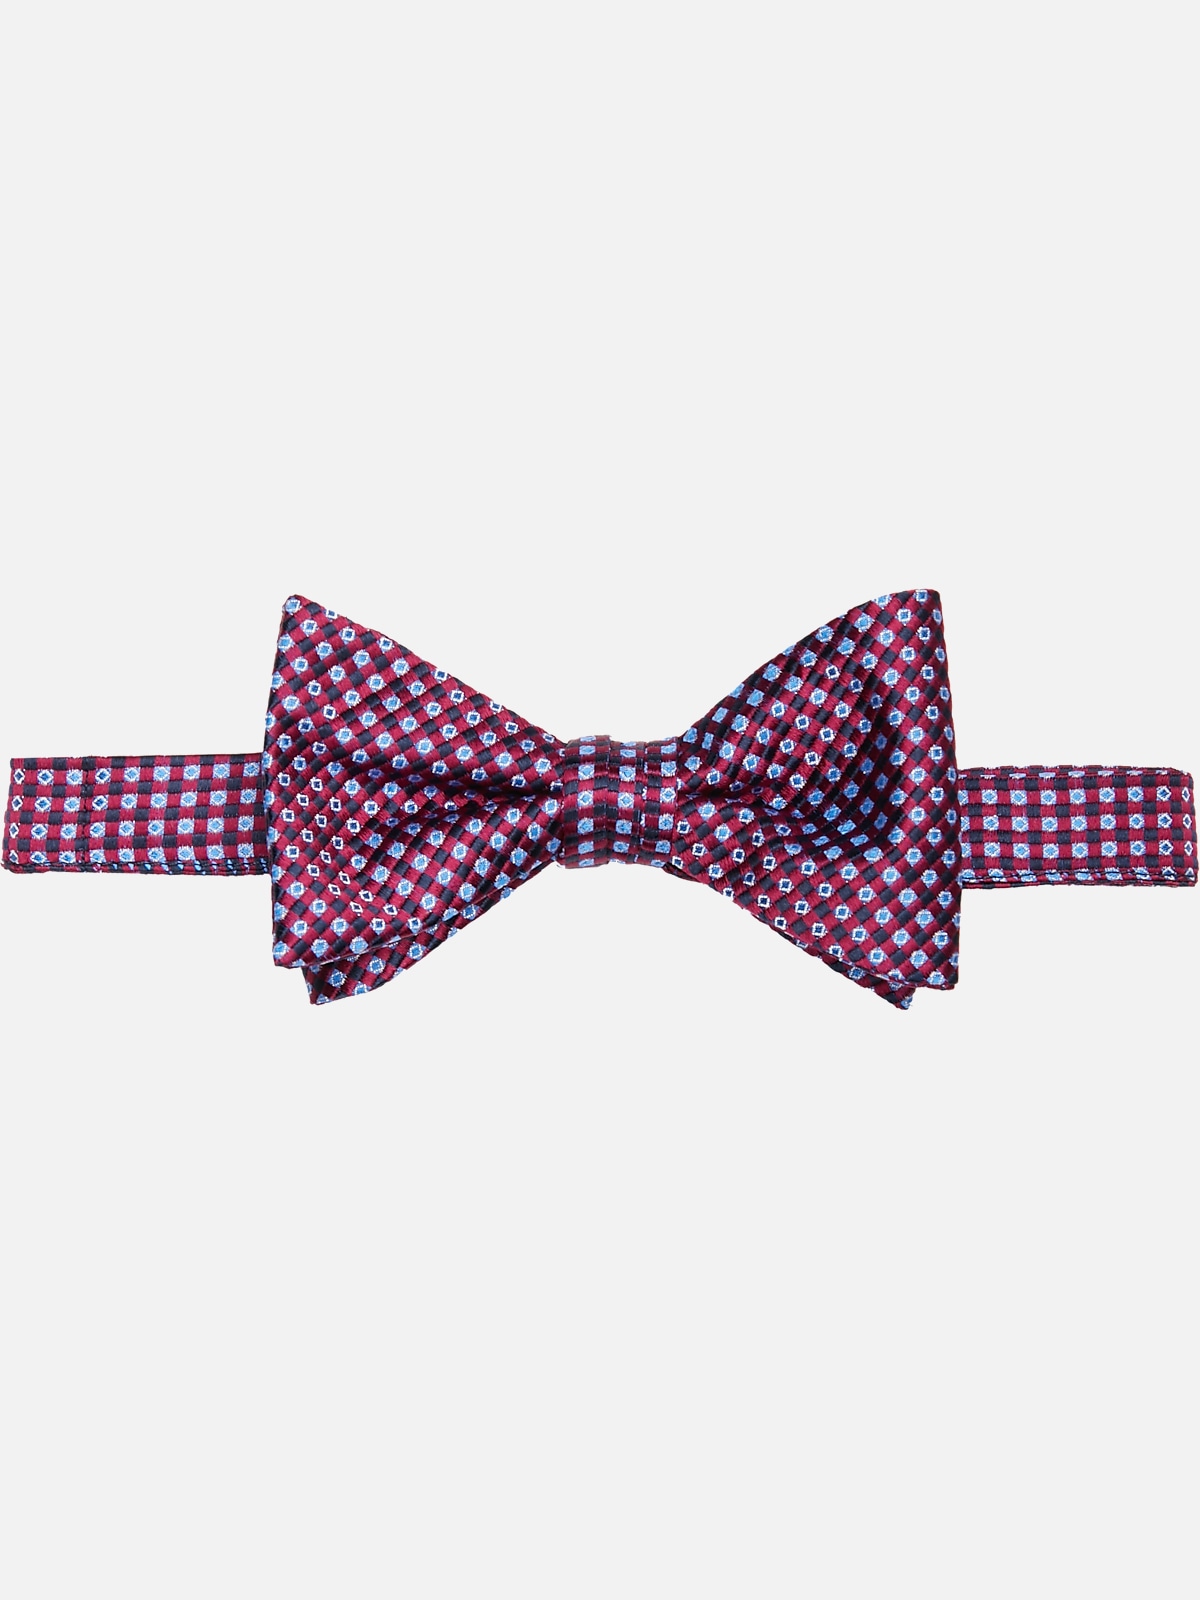 Pronto Uomo Pre-Tied Bow Tie | All Sale| Men's Wearhouse